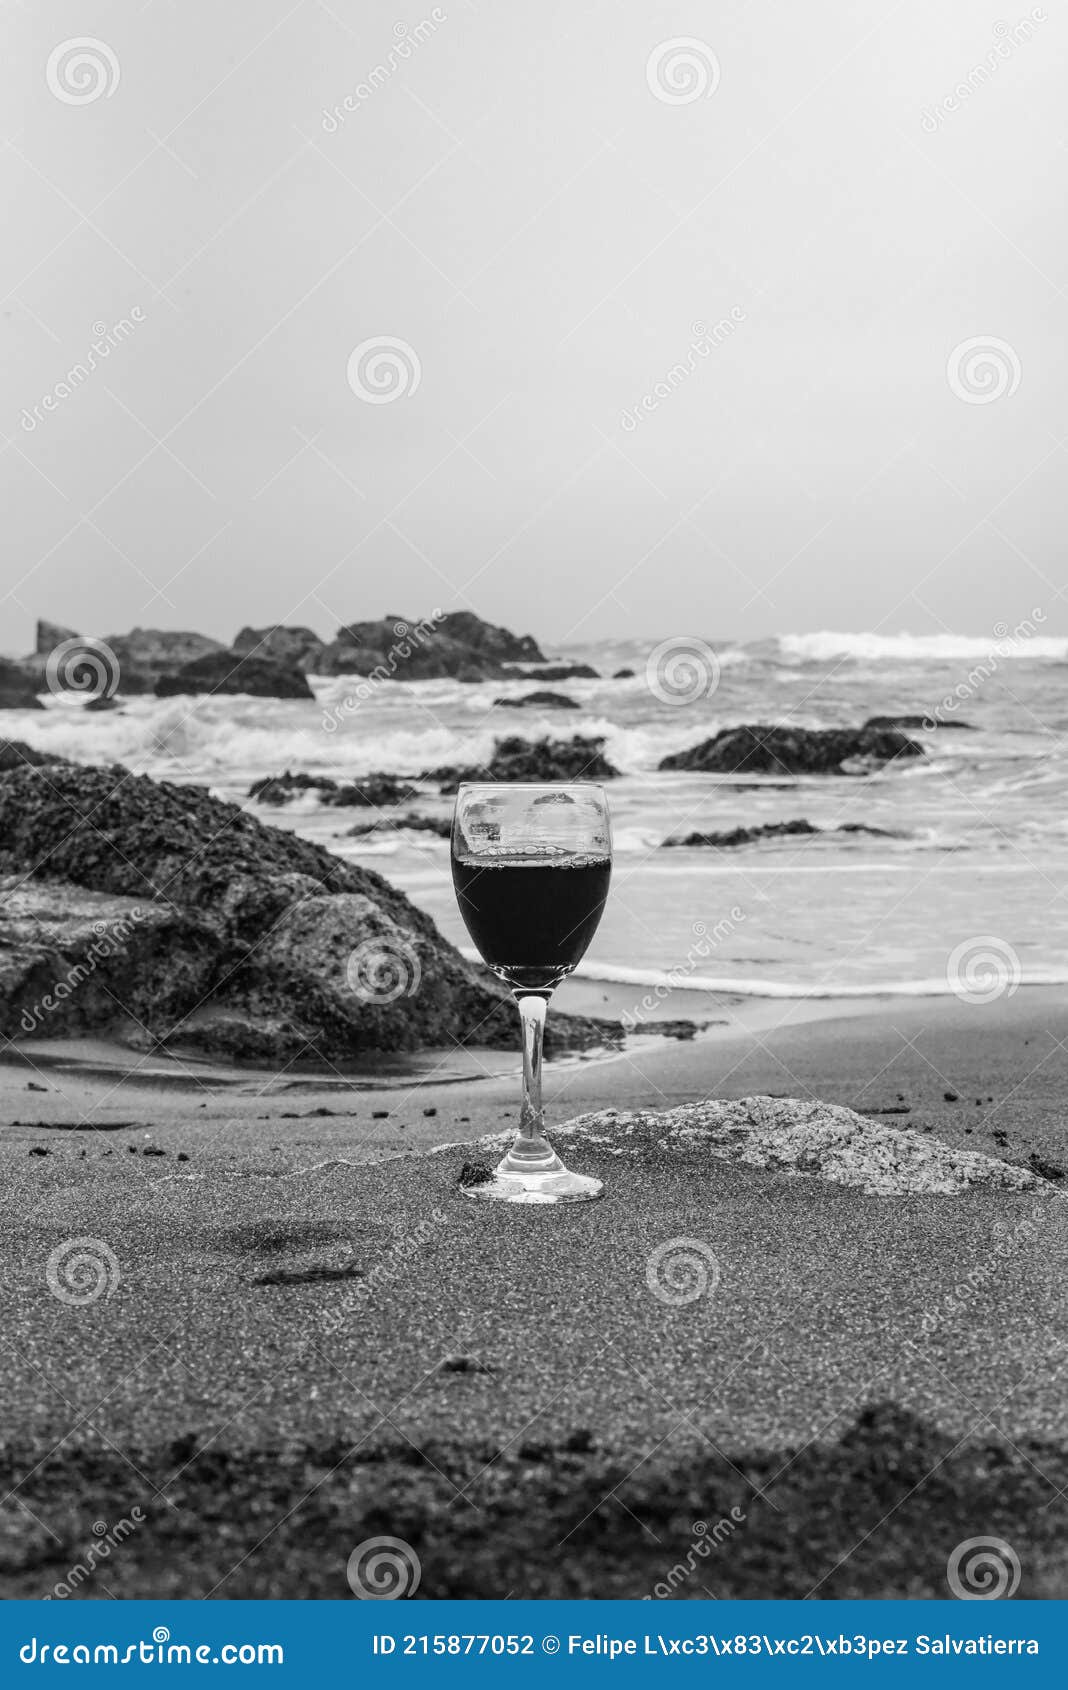 copa de vino tinto en la playa de arena blanco y negro